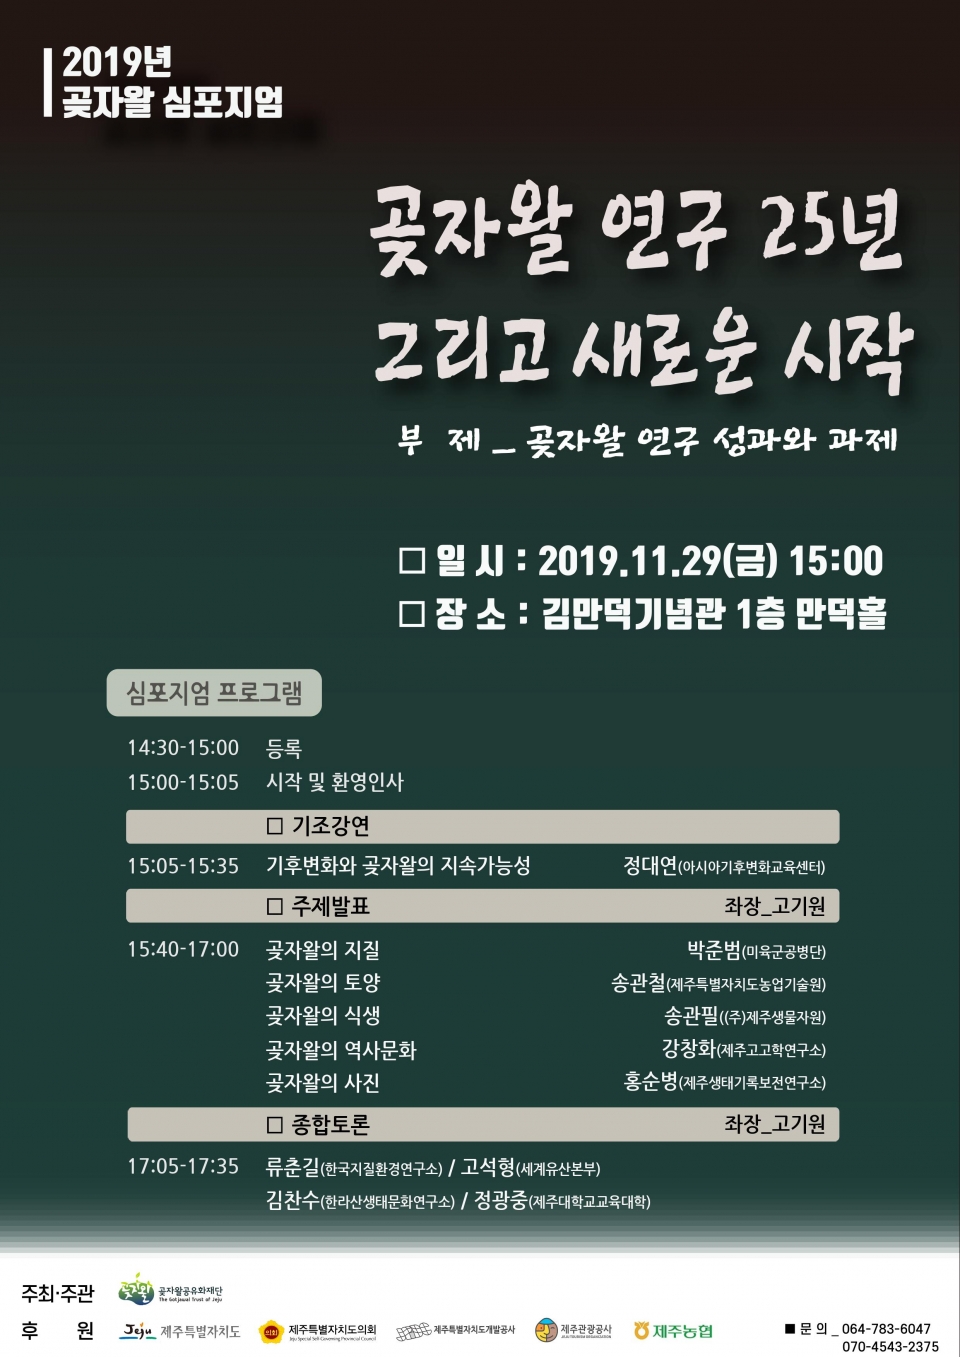 2019년 곶자왈 심포지엄 개최 안내 유인물